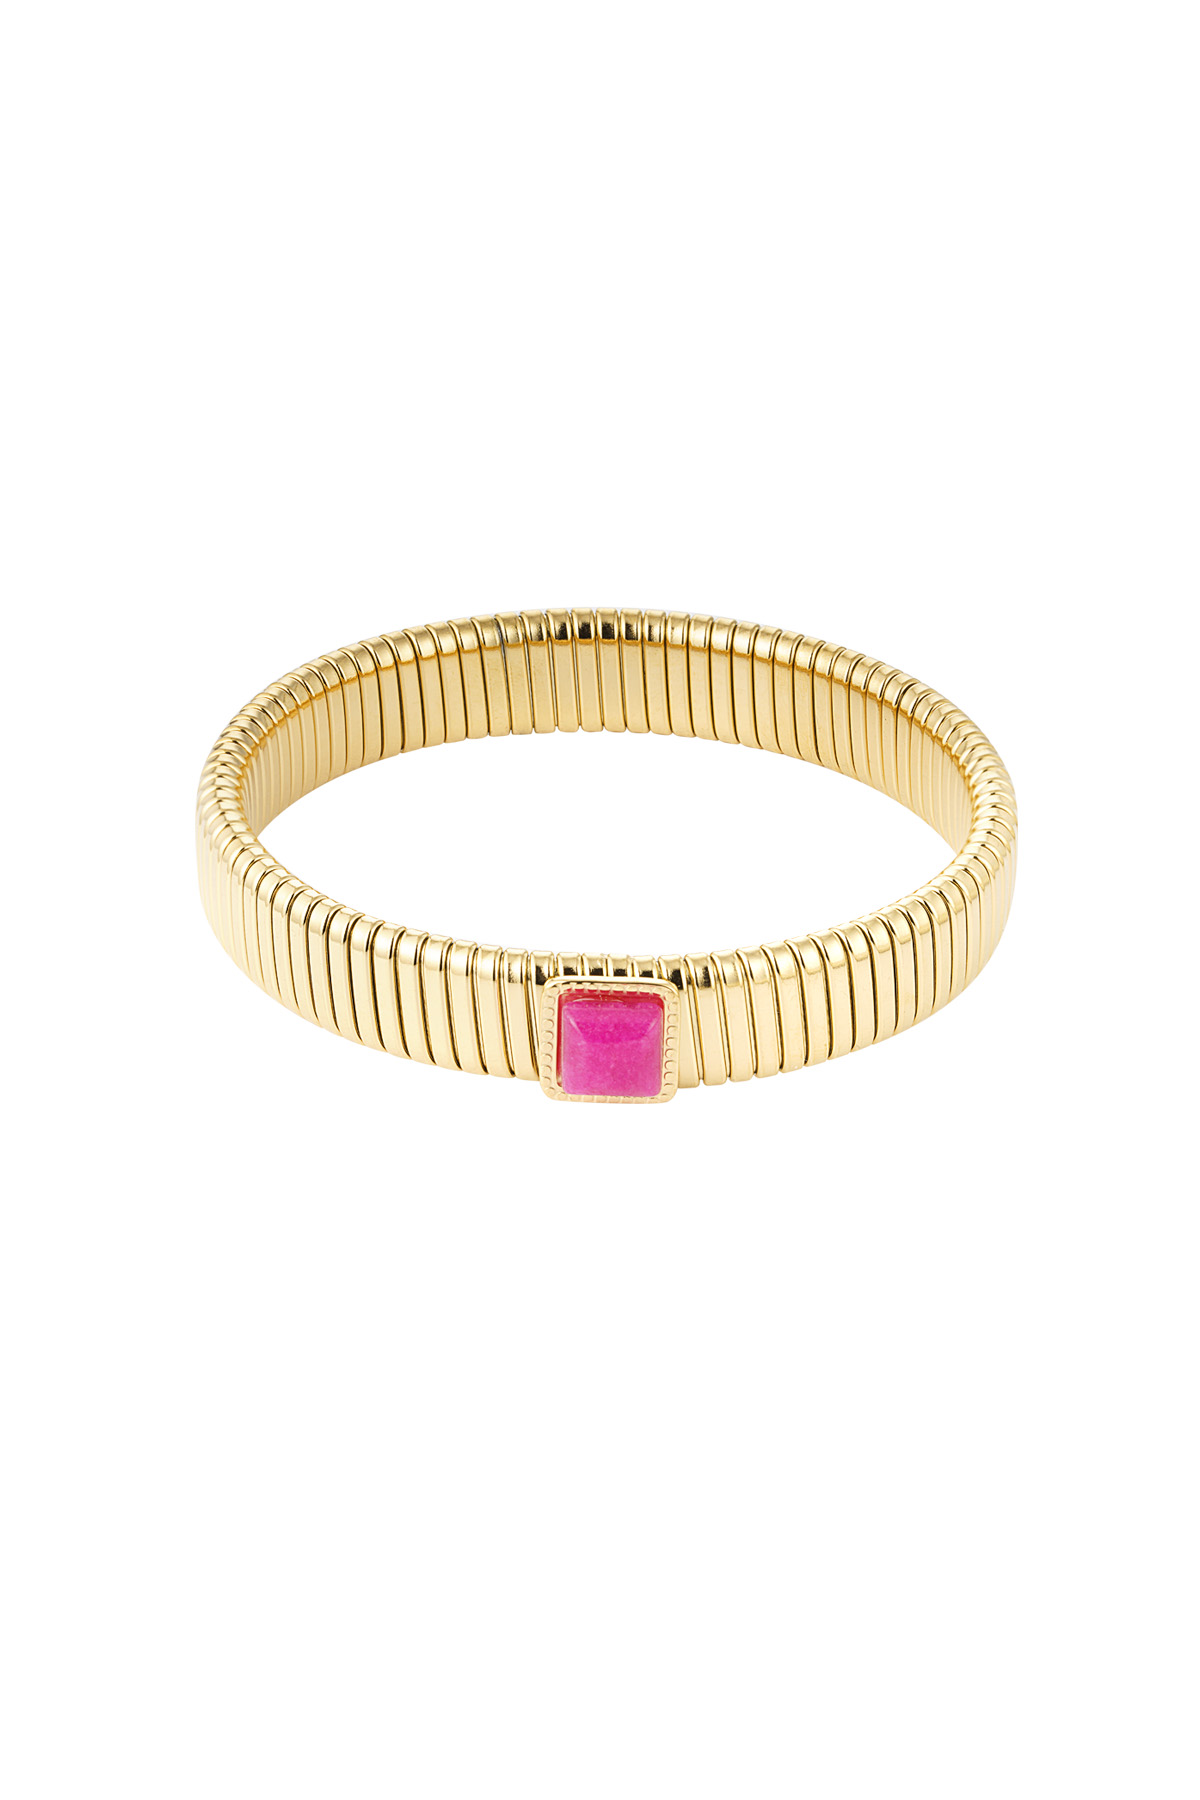 Bohemian bracelet pink stone - Gold